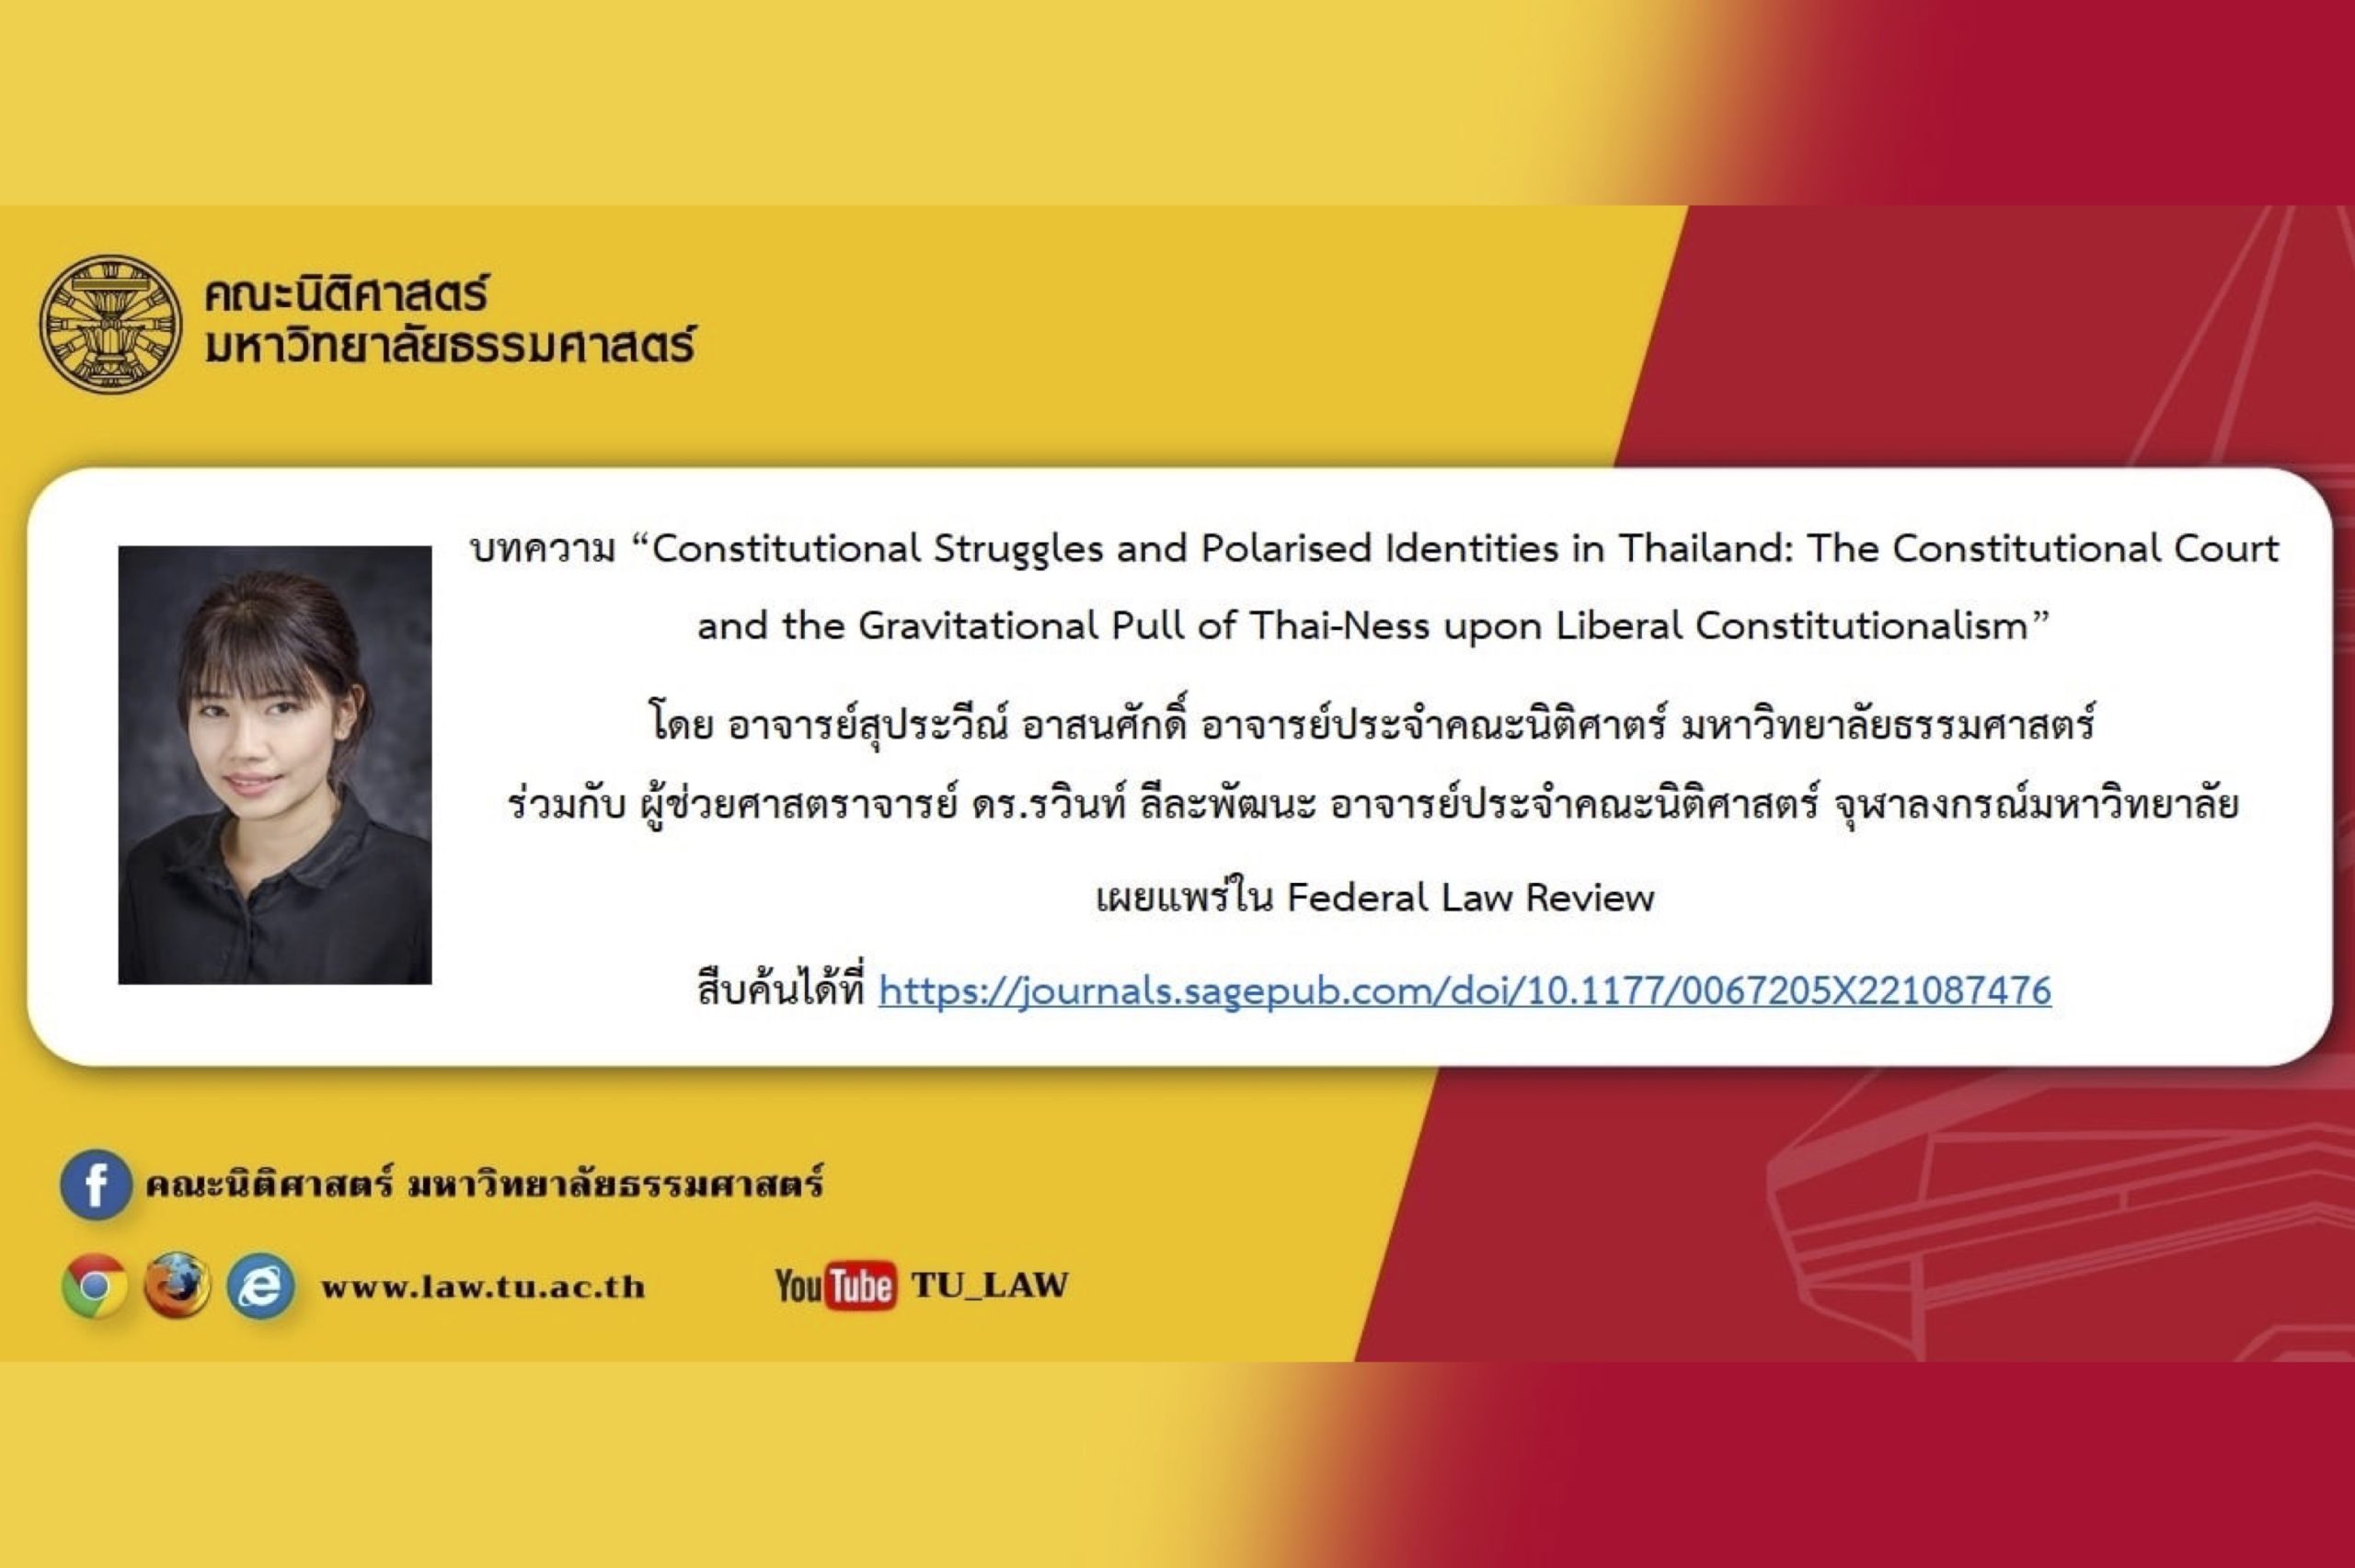 บทความ “Constitutional Struggles and Polarised Identities in Thailand: The Constitutional Court and the Gravitational Pull of Thai-Ness upon Liberal Constitutionalism”